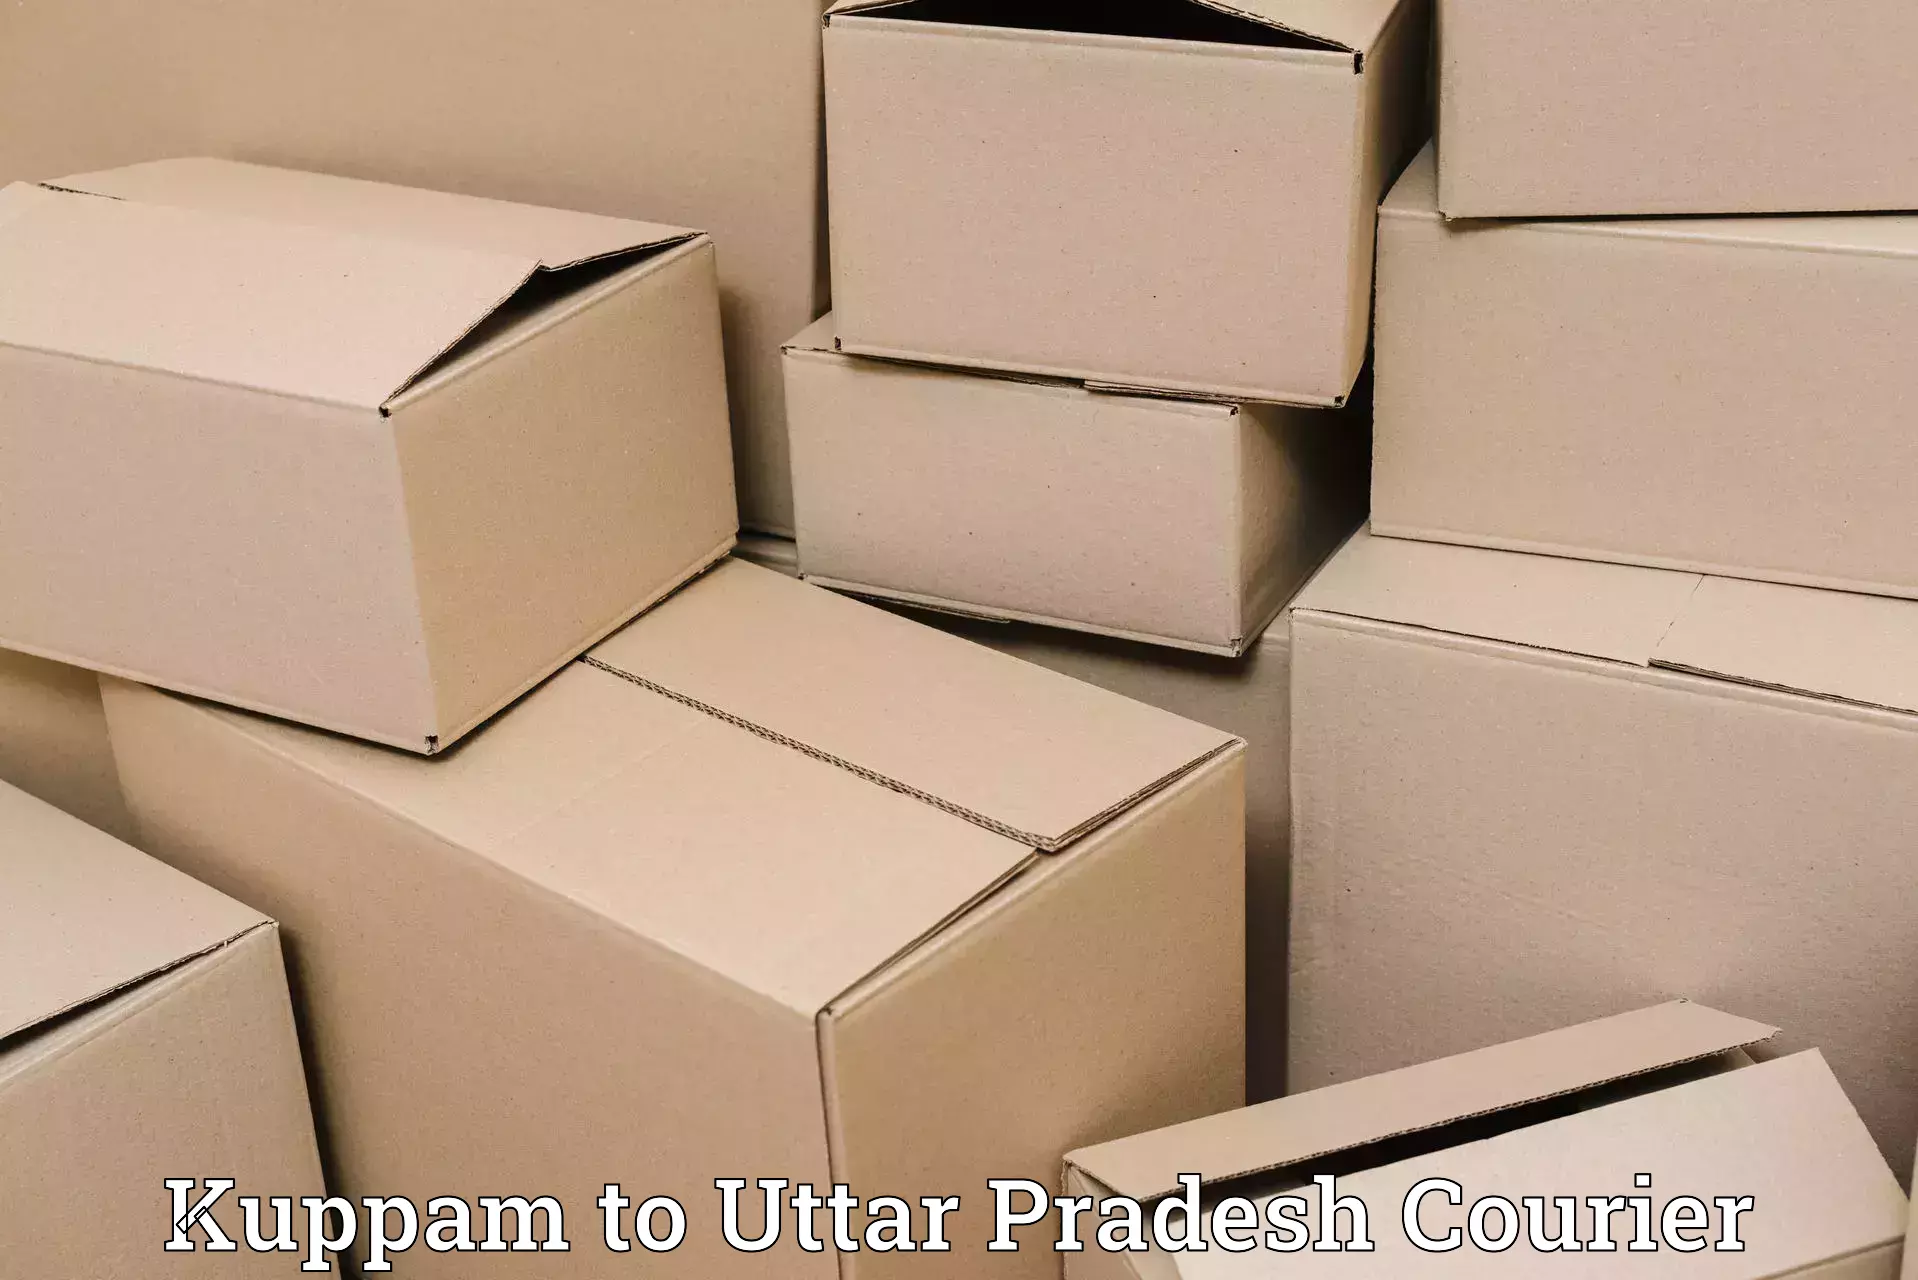 Local courier options Kuppam to Uttar Pradesh